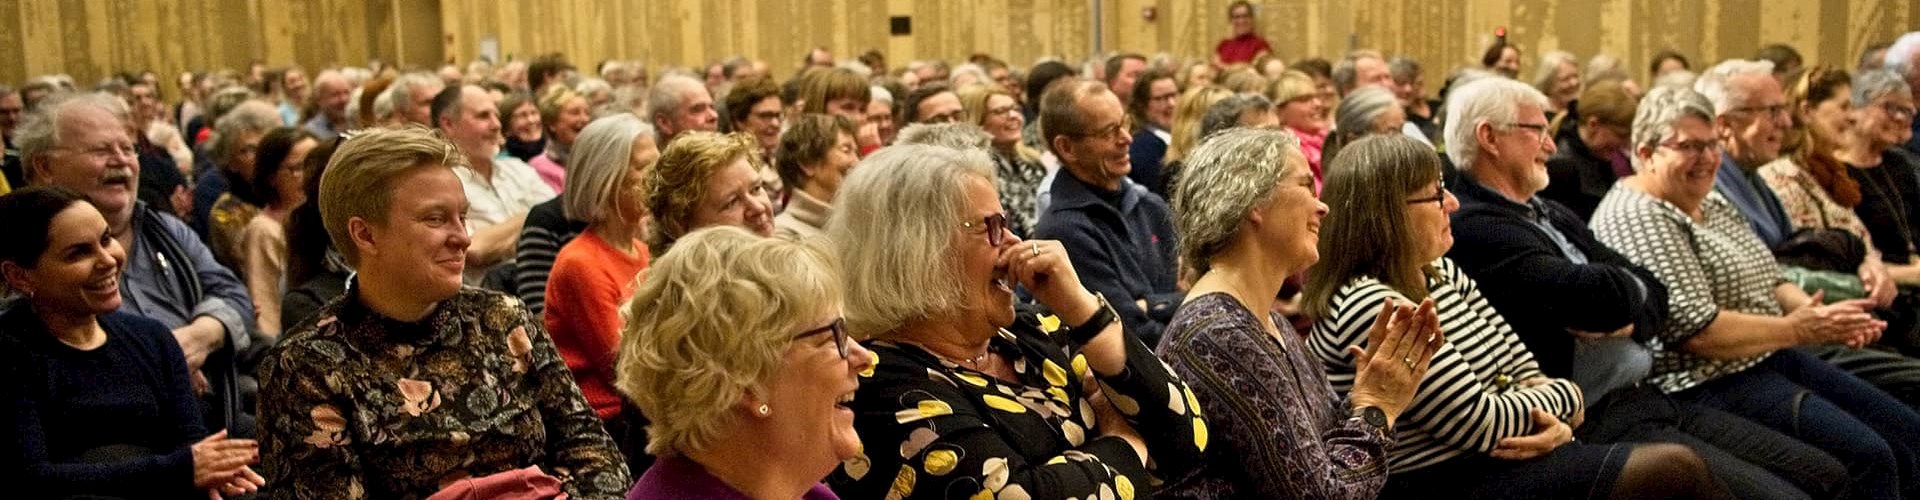 Publikum til foredrag ved FOF Aarhus på Dokk1 i Aarhus